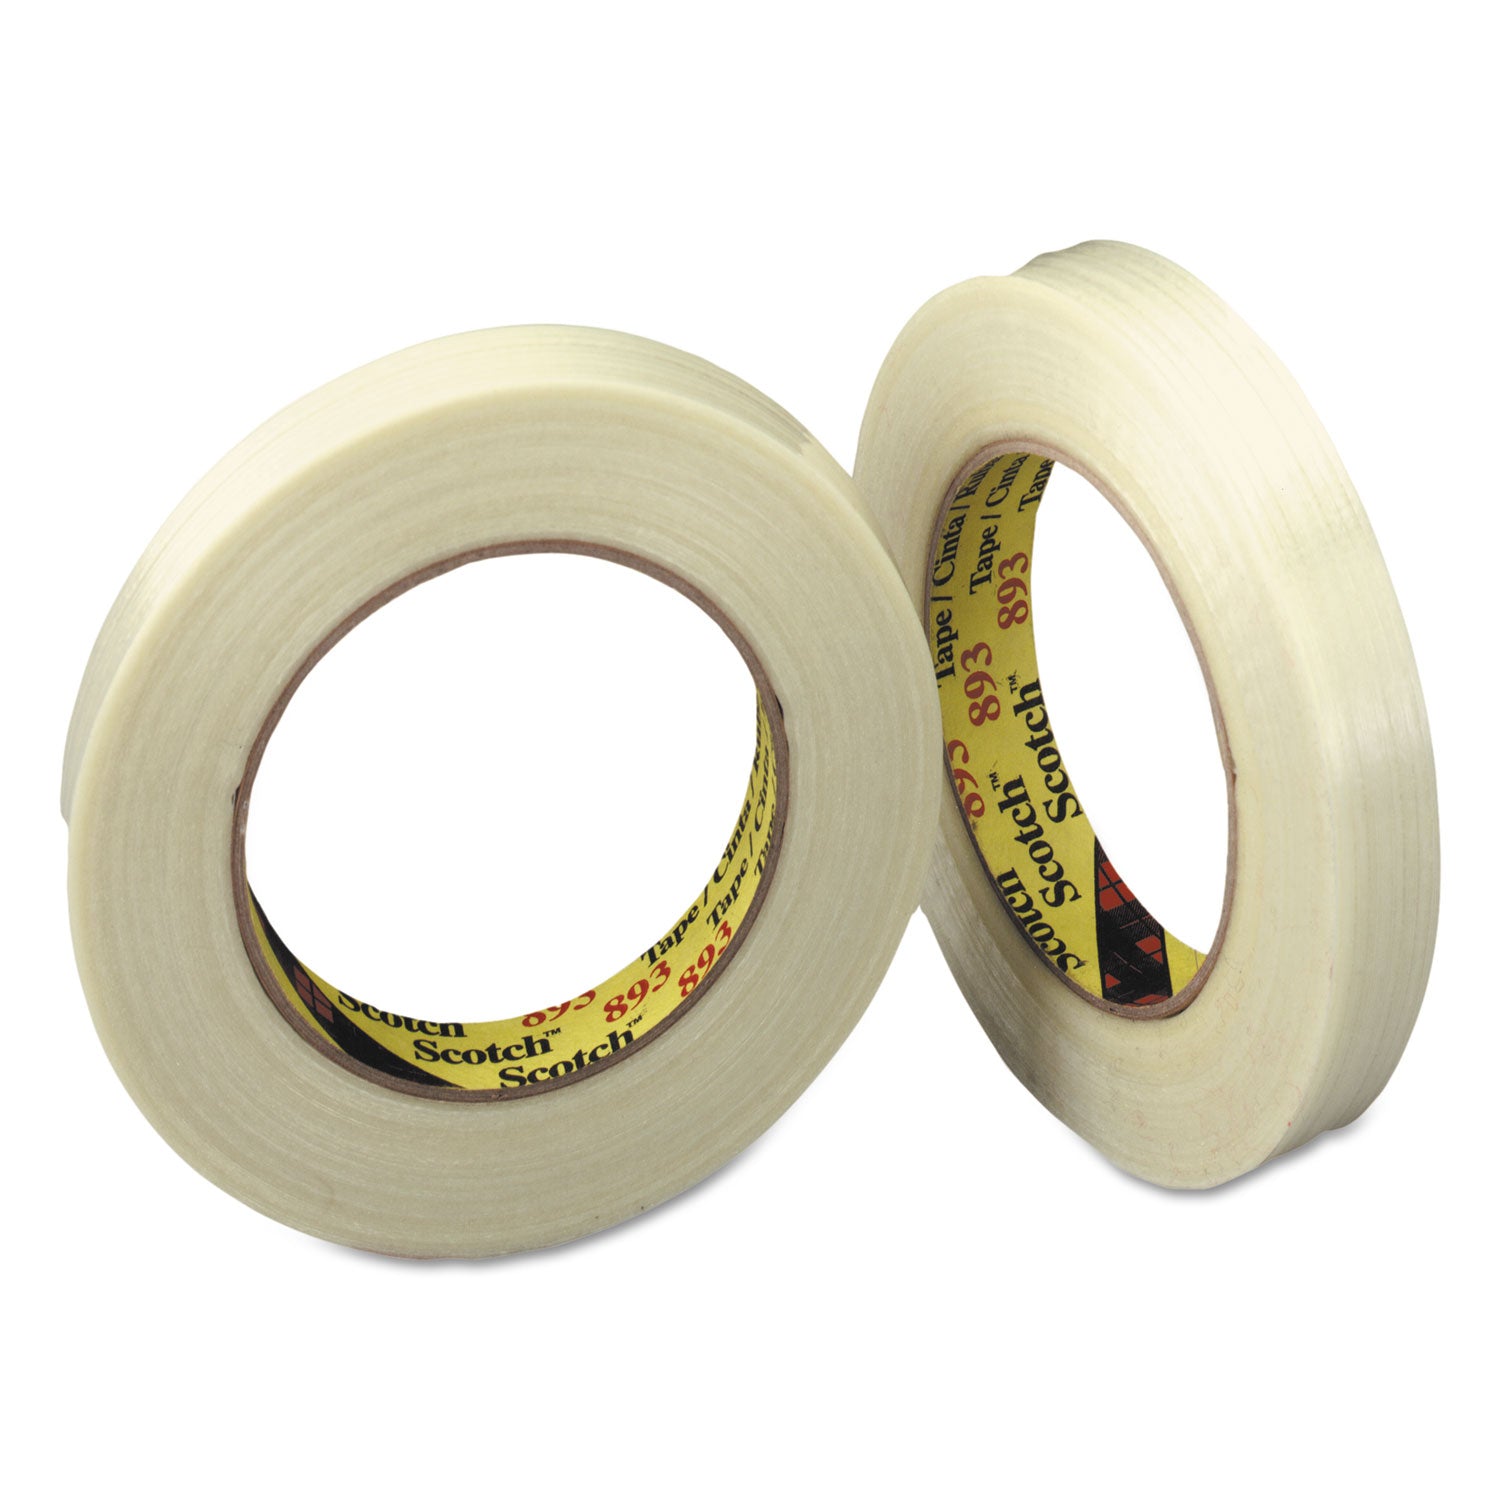 General-Purpose Glass Filament Tape, 3" Core, 24 mm x 55 m, Clear - 